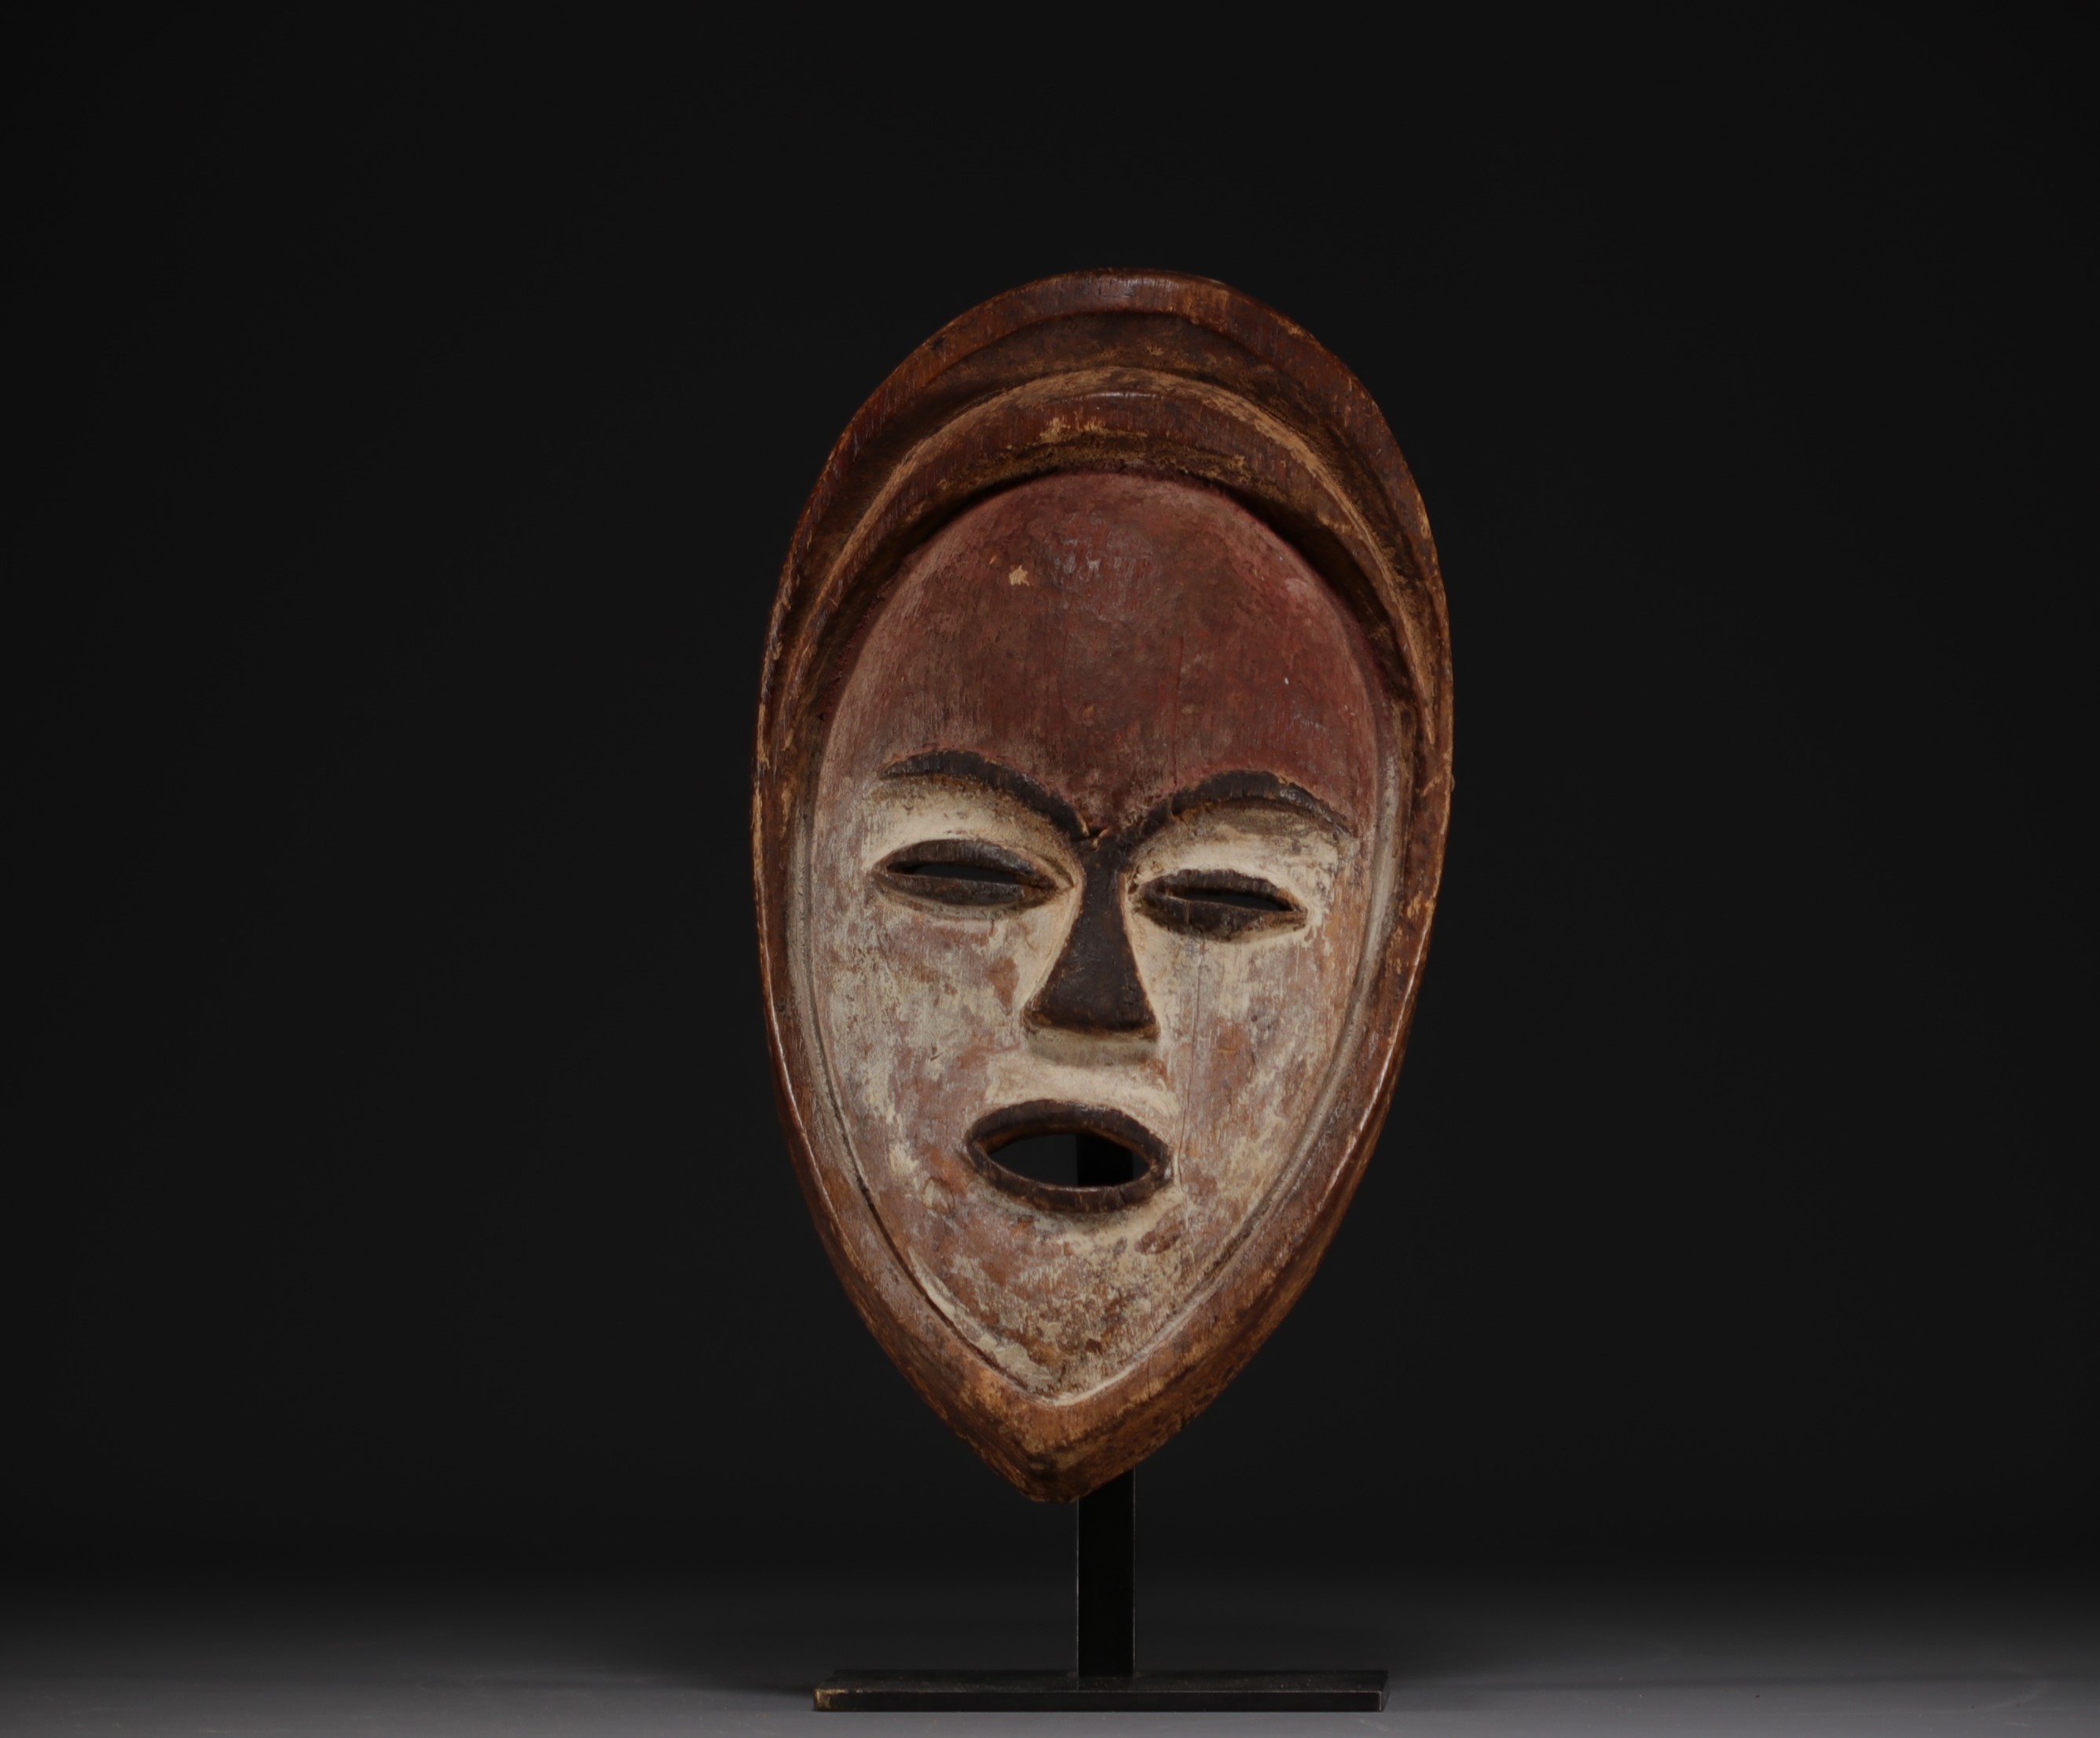 Gabon - Vouvi mask in carved wood, Michel Boulanger collection Liege - Image 3 of 4